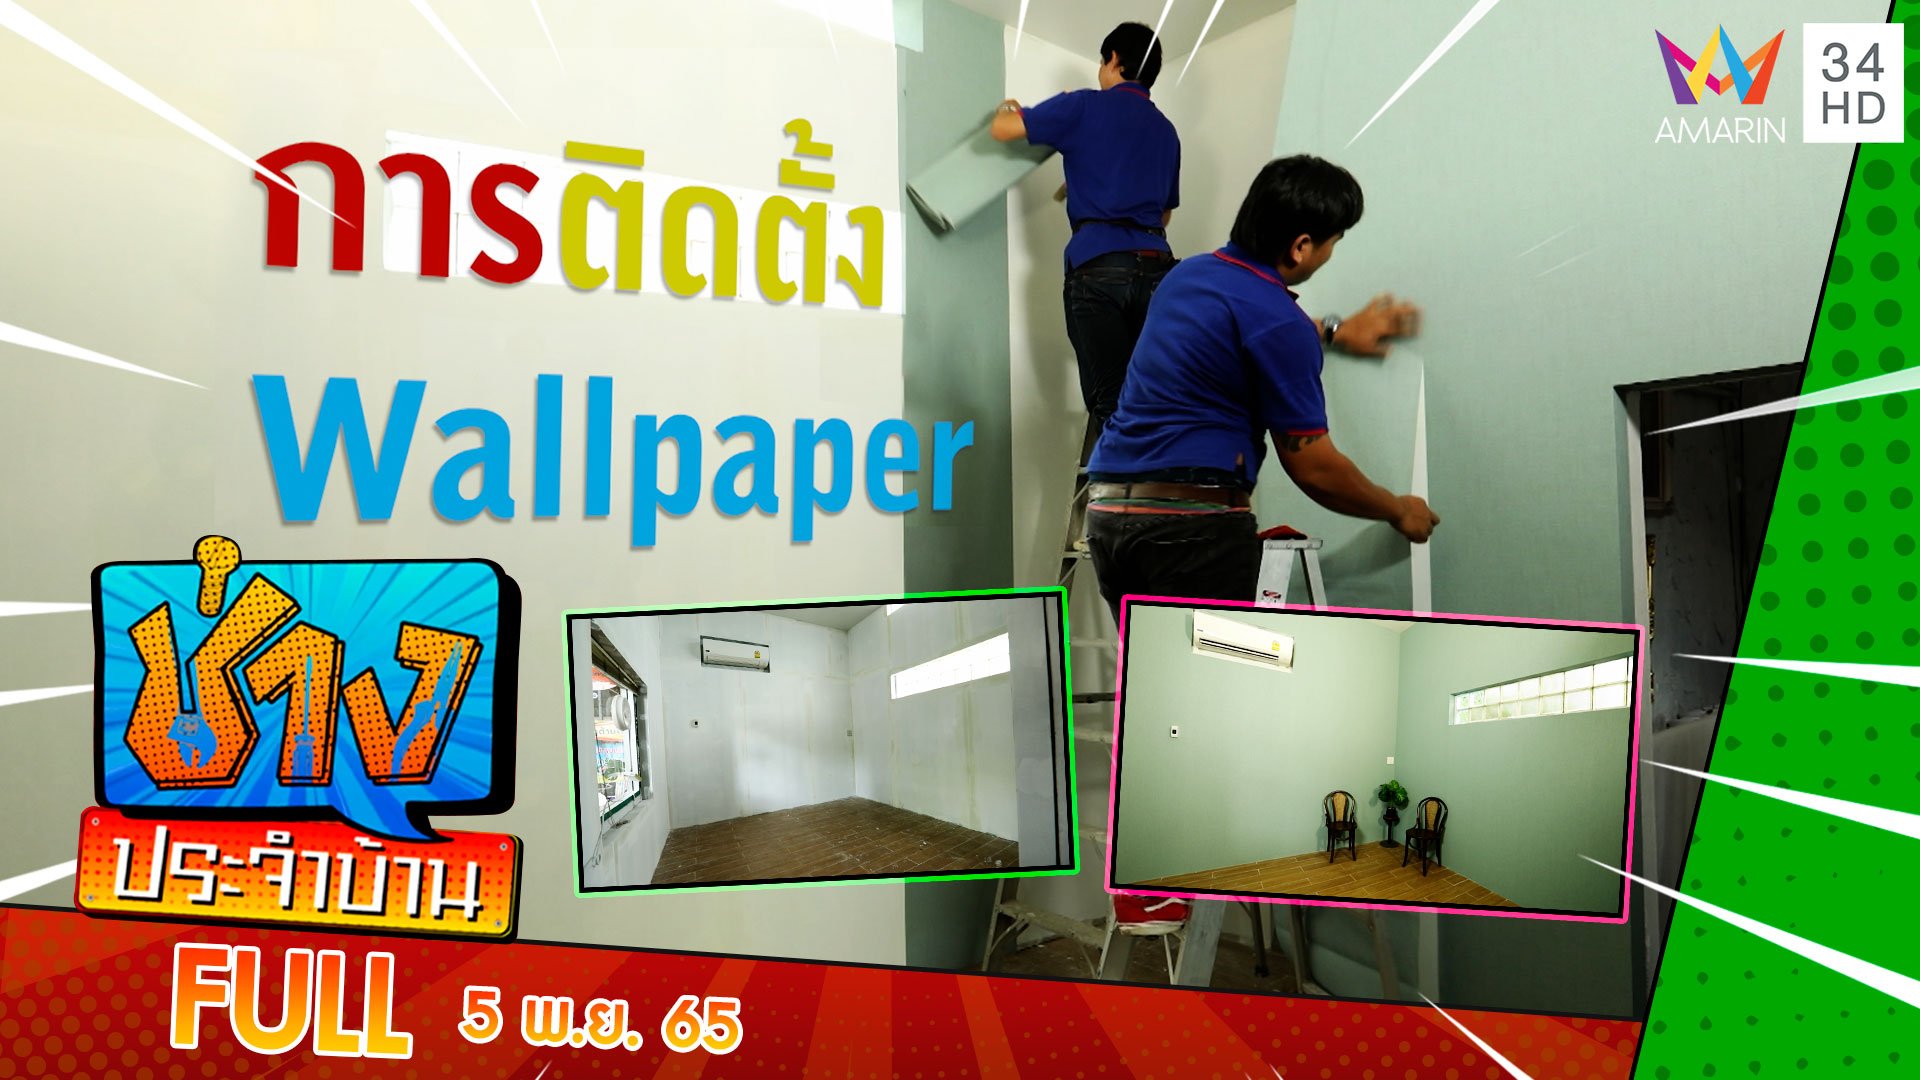 การติดตั้ง Wallpaper ให้สวยและดูดี  | ช่างประจำบ้าน | 5 พ.ย. 65 | AMARIN TVHD34